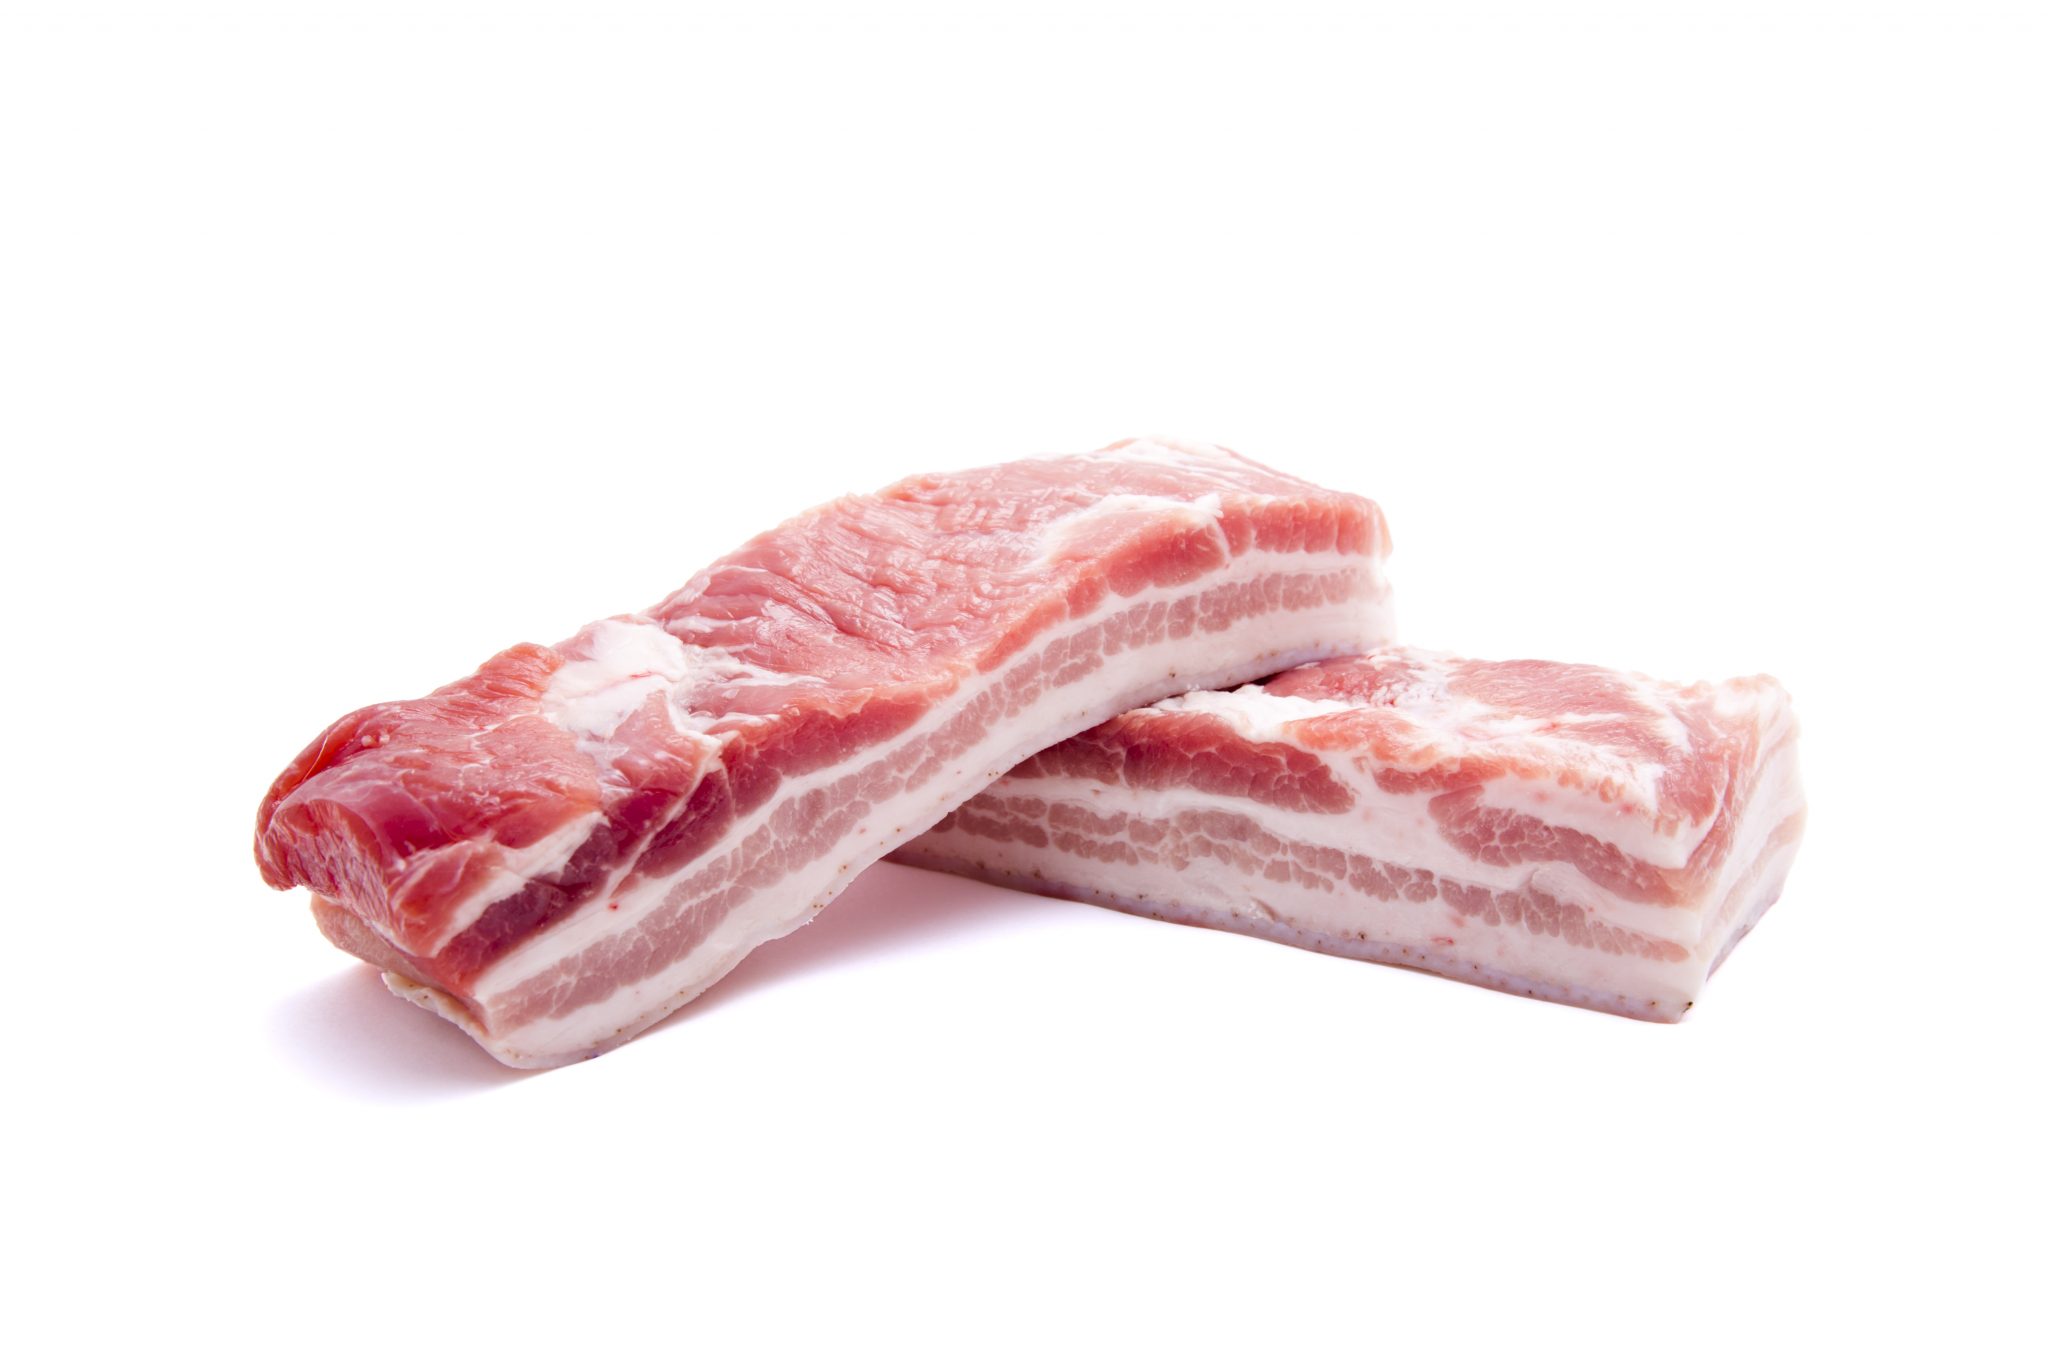 白色背景中突显的鲜生猪肉肋条 库存图片. 图片 包括有 草本, 猪肉, 烹饪, 羊肉, 敌意, 骨头的 - 178975111